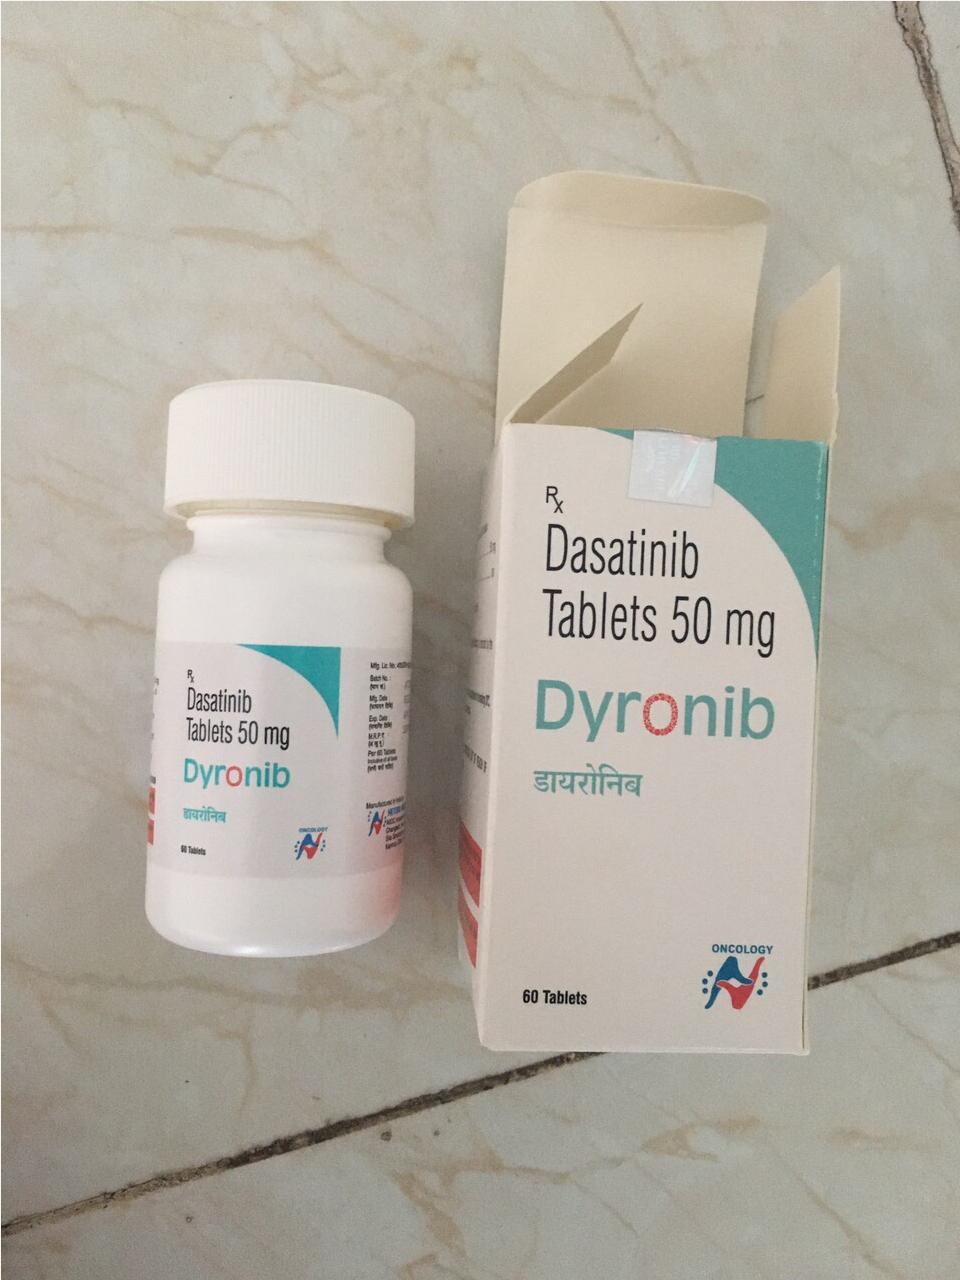 Thuốc Dyronib Dasatinib 50mg giá bao nhiêu mua ở đâu?